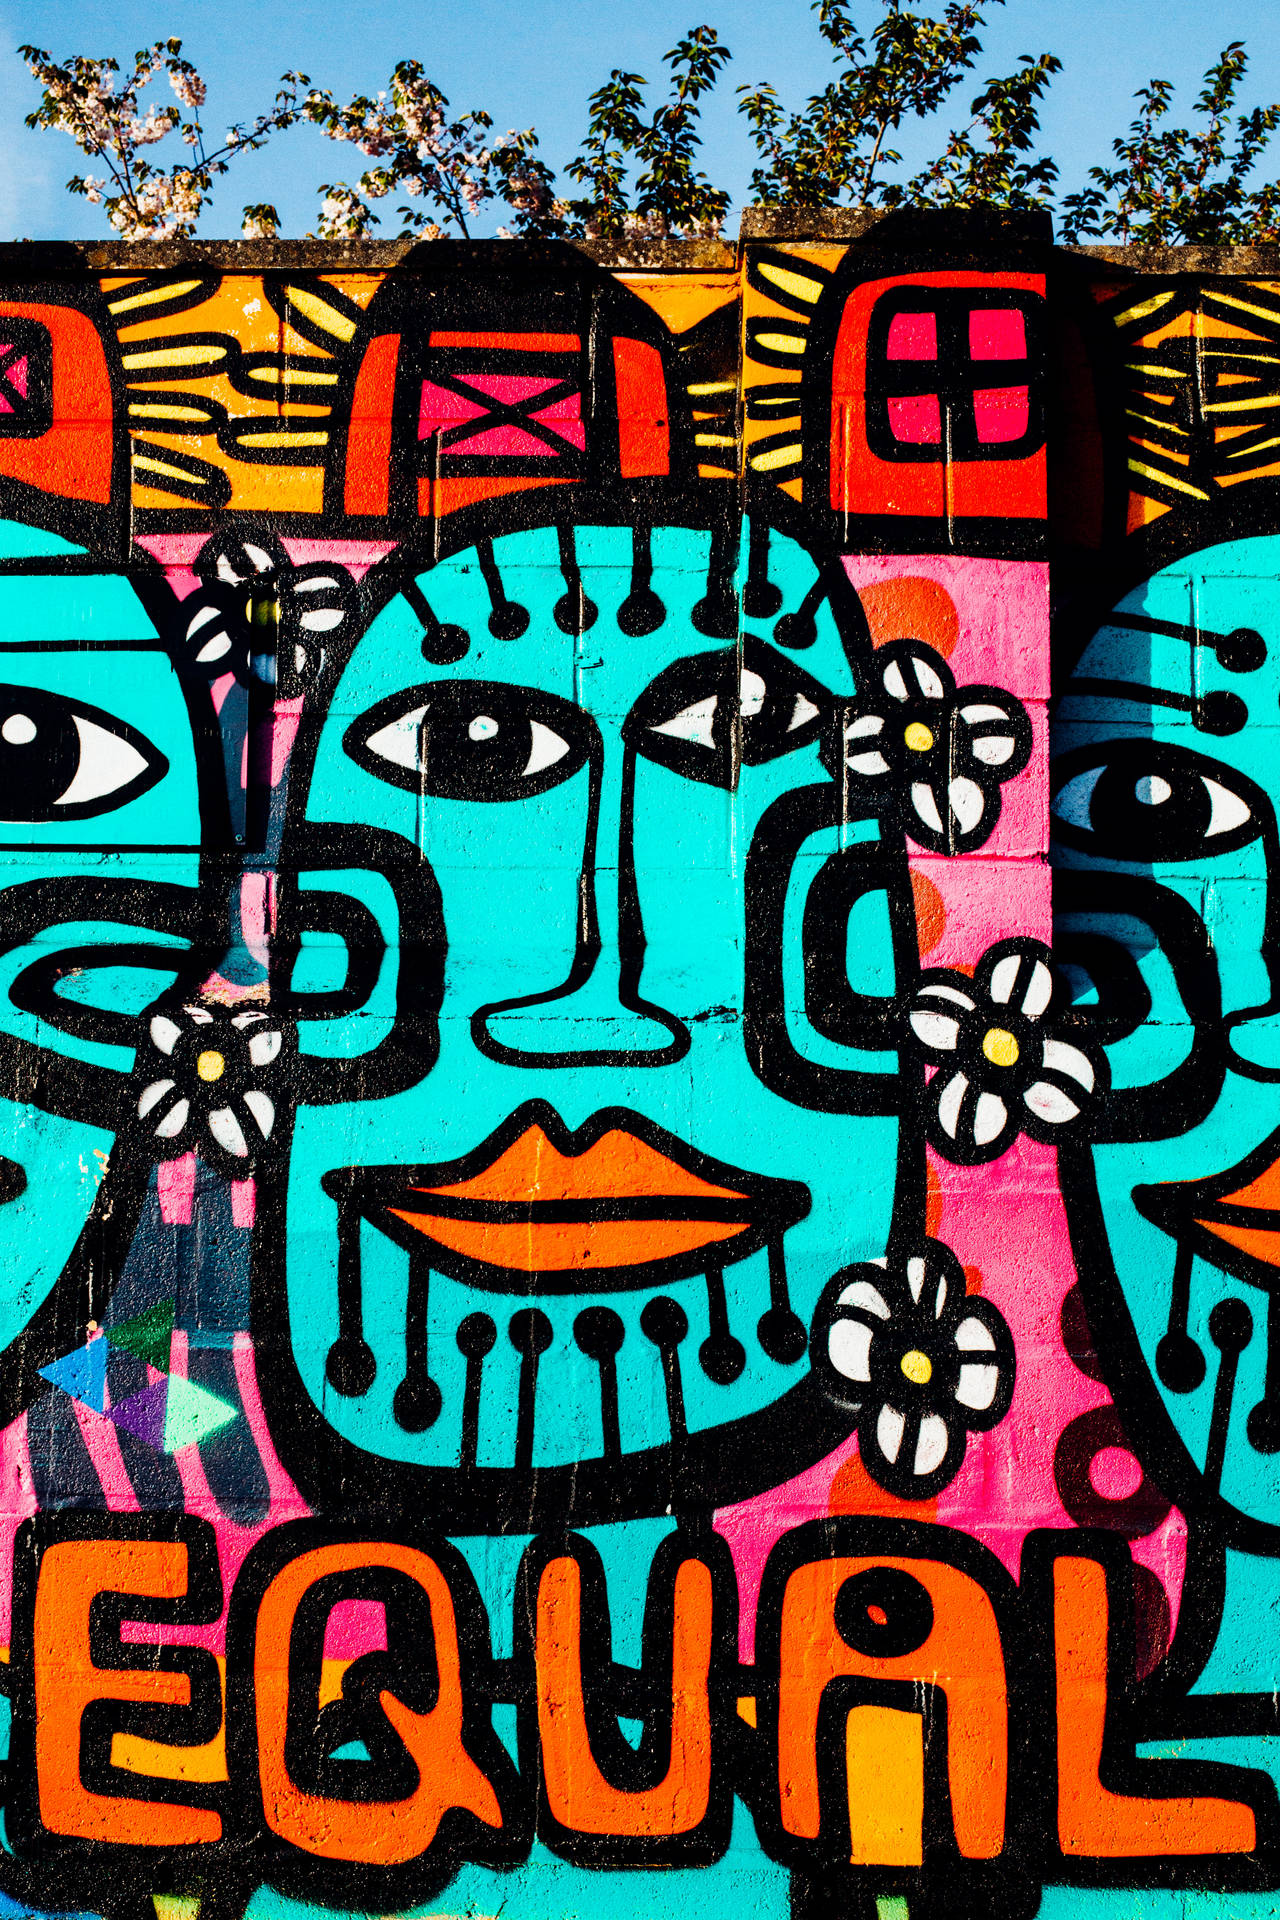 Equal Tribal Graffiti Street Art wallpaper